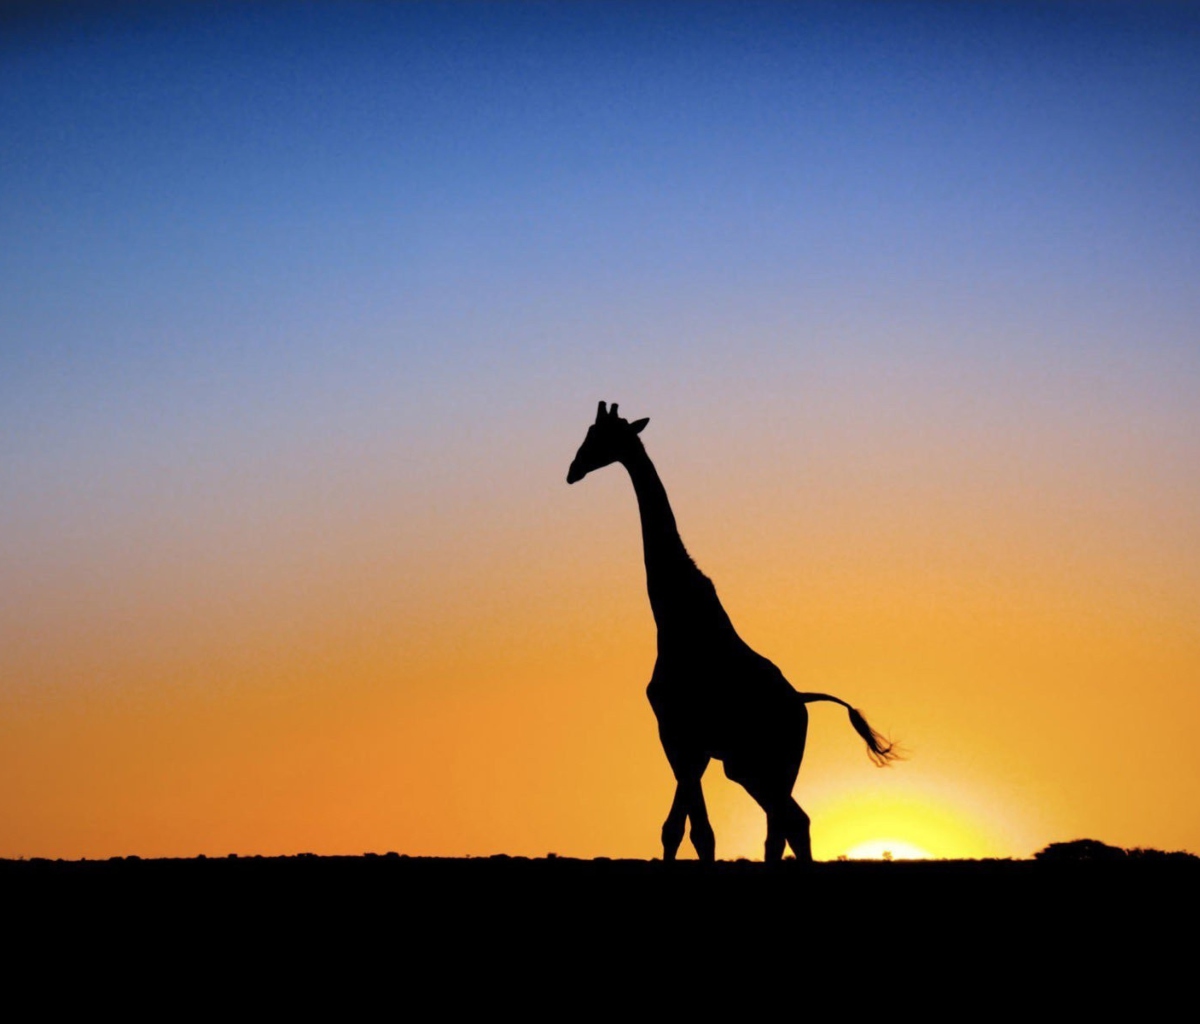 Safari At Sunset - Giraffe's Silhouette screenshot #1 1200x1024